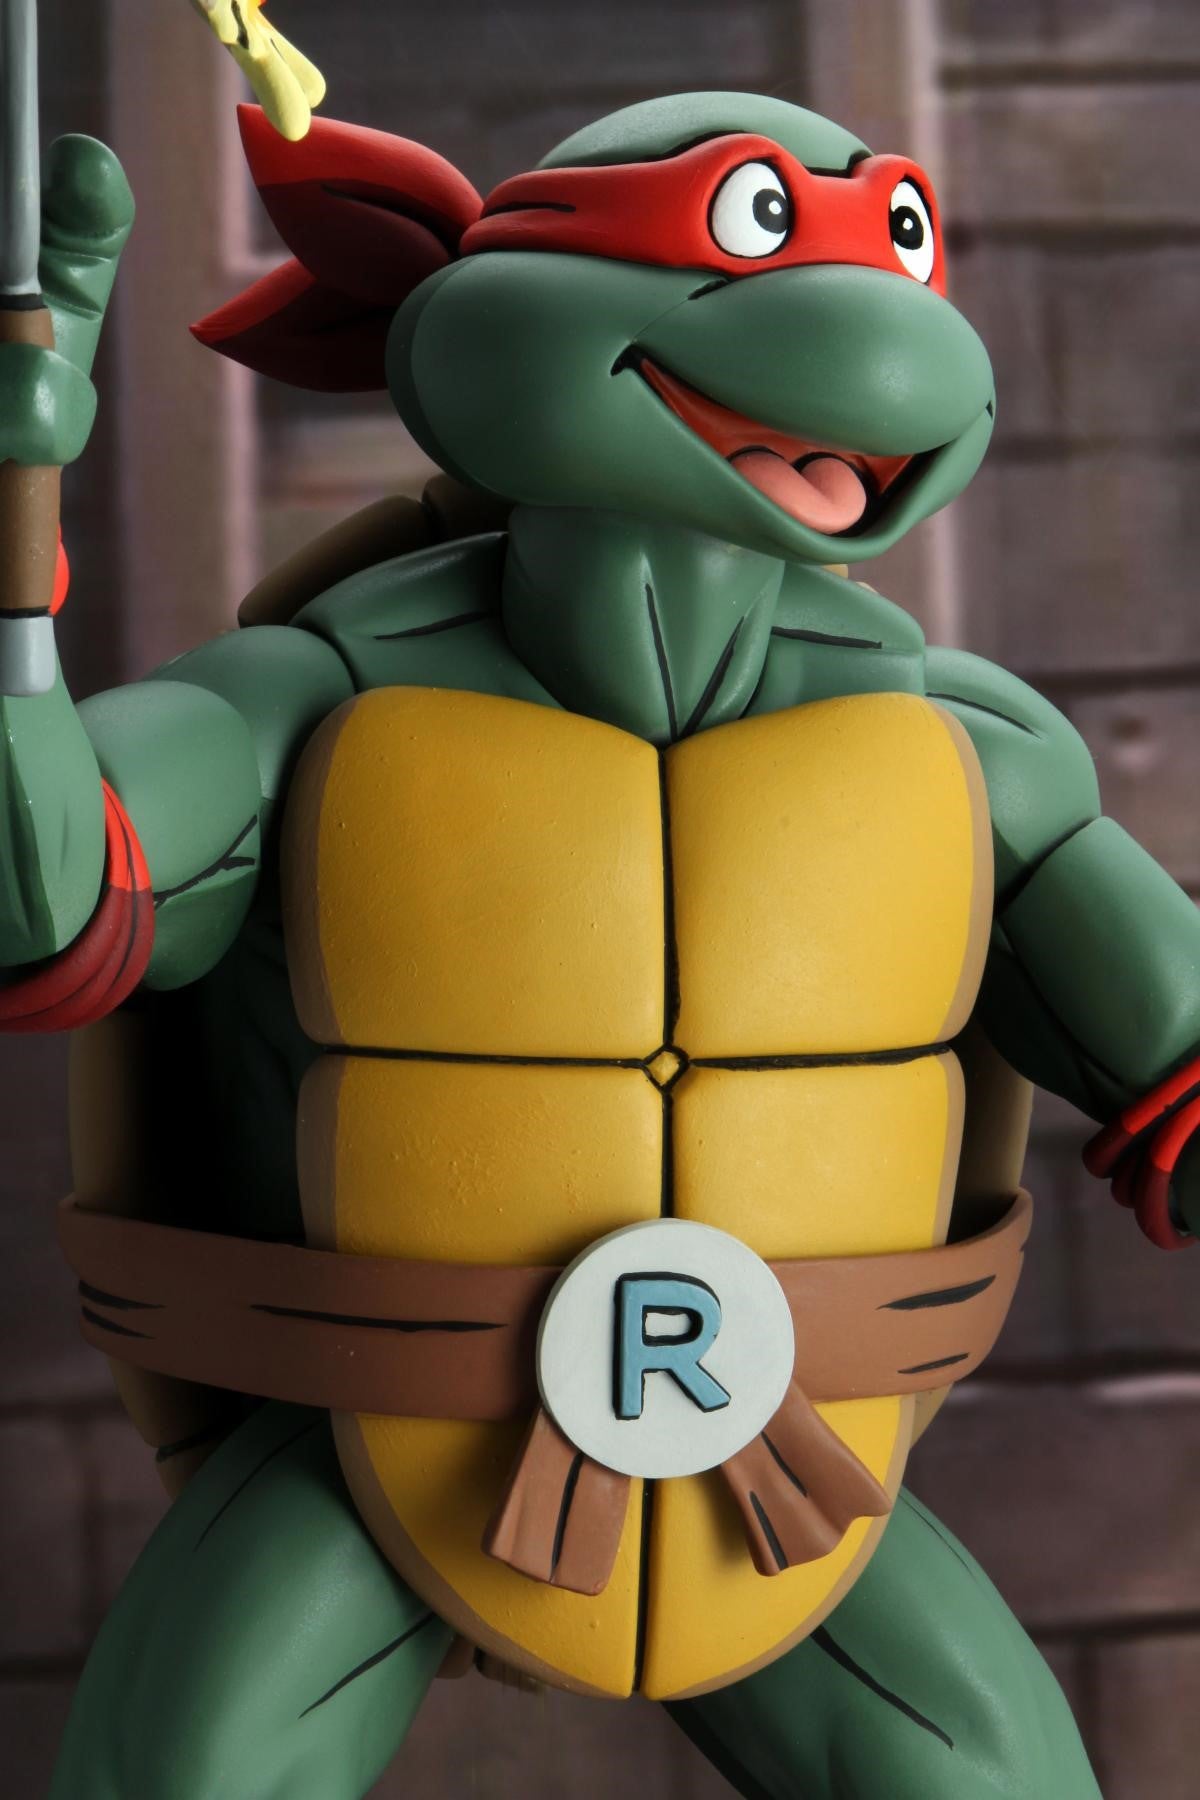 Teenage Mutant Ninja Turtles (Cartoon) – ¼ Scale Action Figure – Super Size Raphael